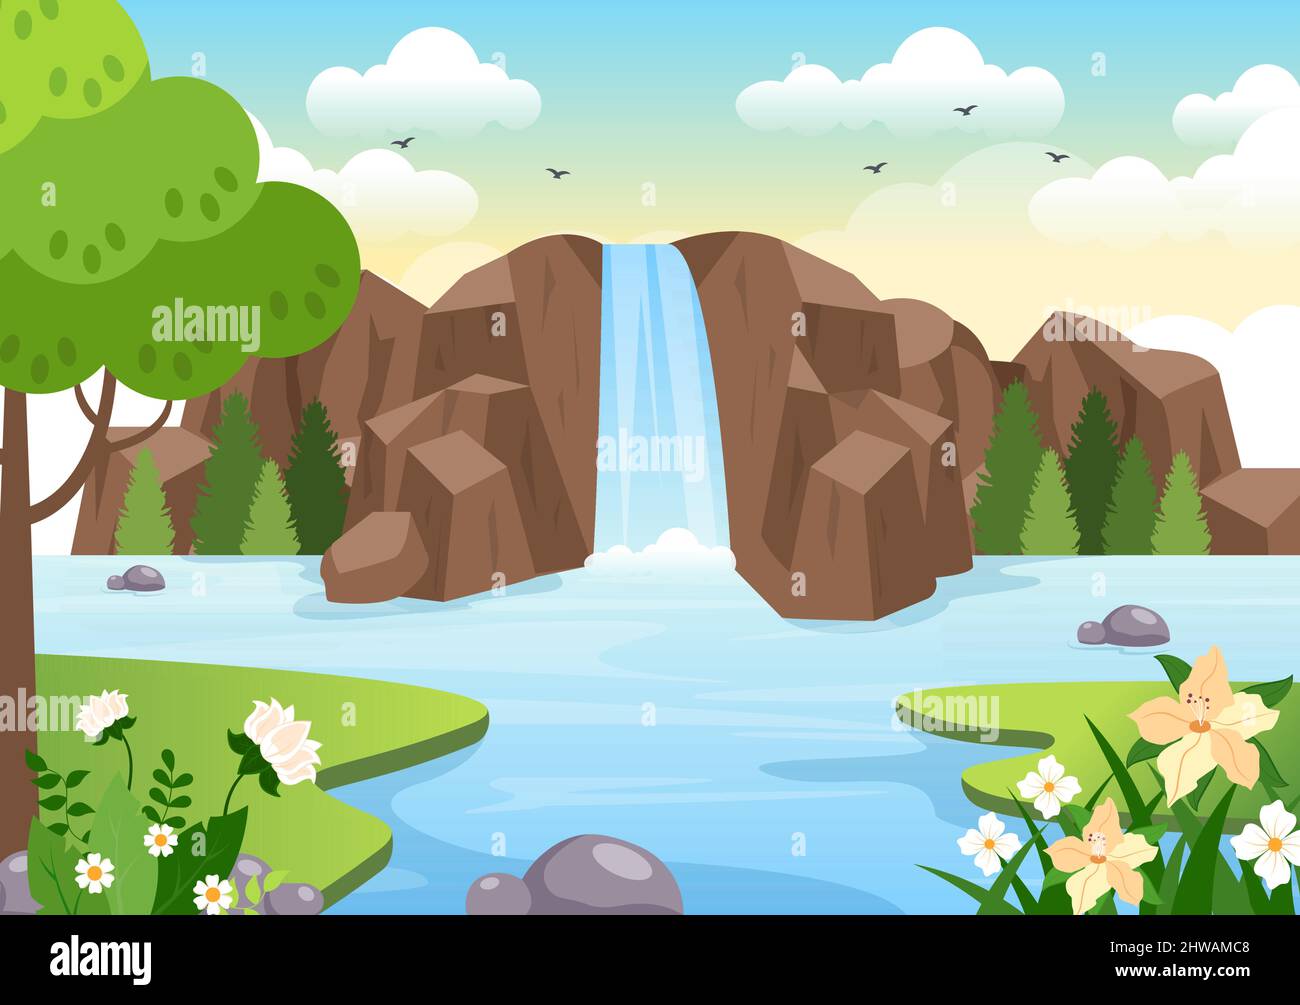 Wasserfall Dschungel Landschaft tropischer Naturlandschaft mit Kaskade von Felsen, Flussläufen oder Rocky Cliff in flachem Hintergrund Vektor-Illustration Stock Vektor